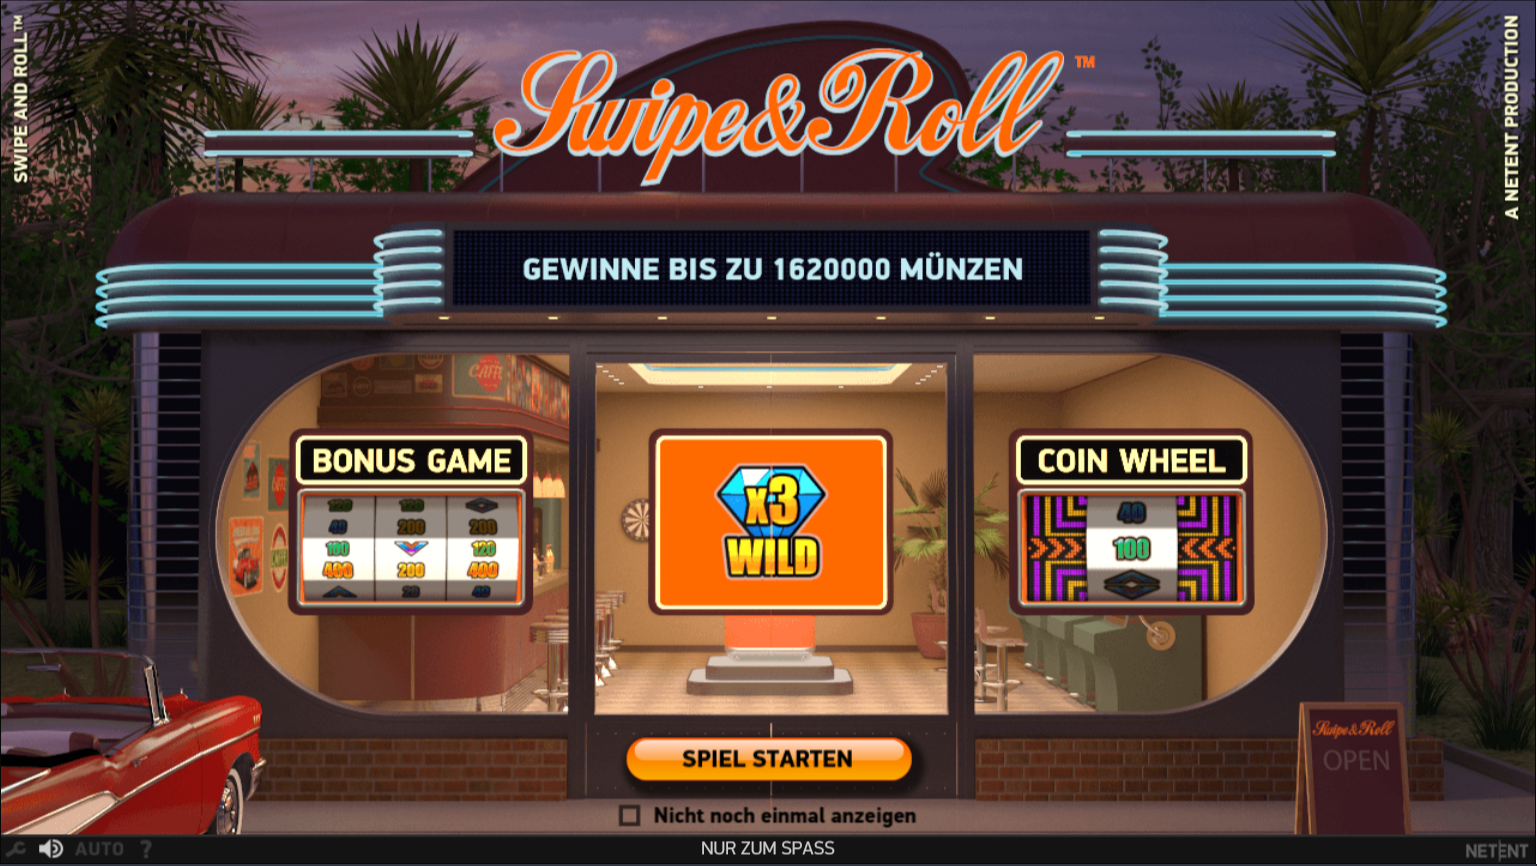 Swipe & Roll mit Bonus Game und doppeltem Wild